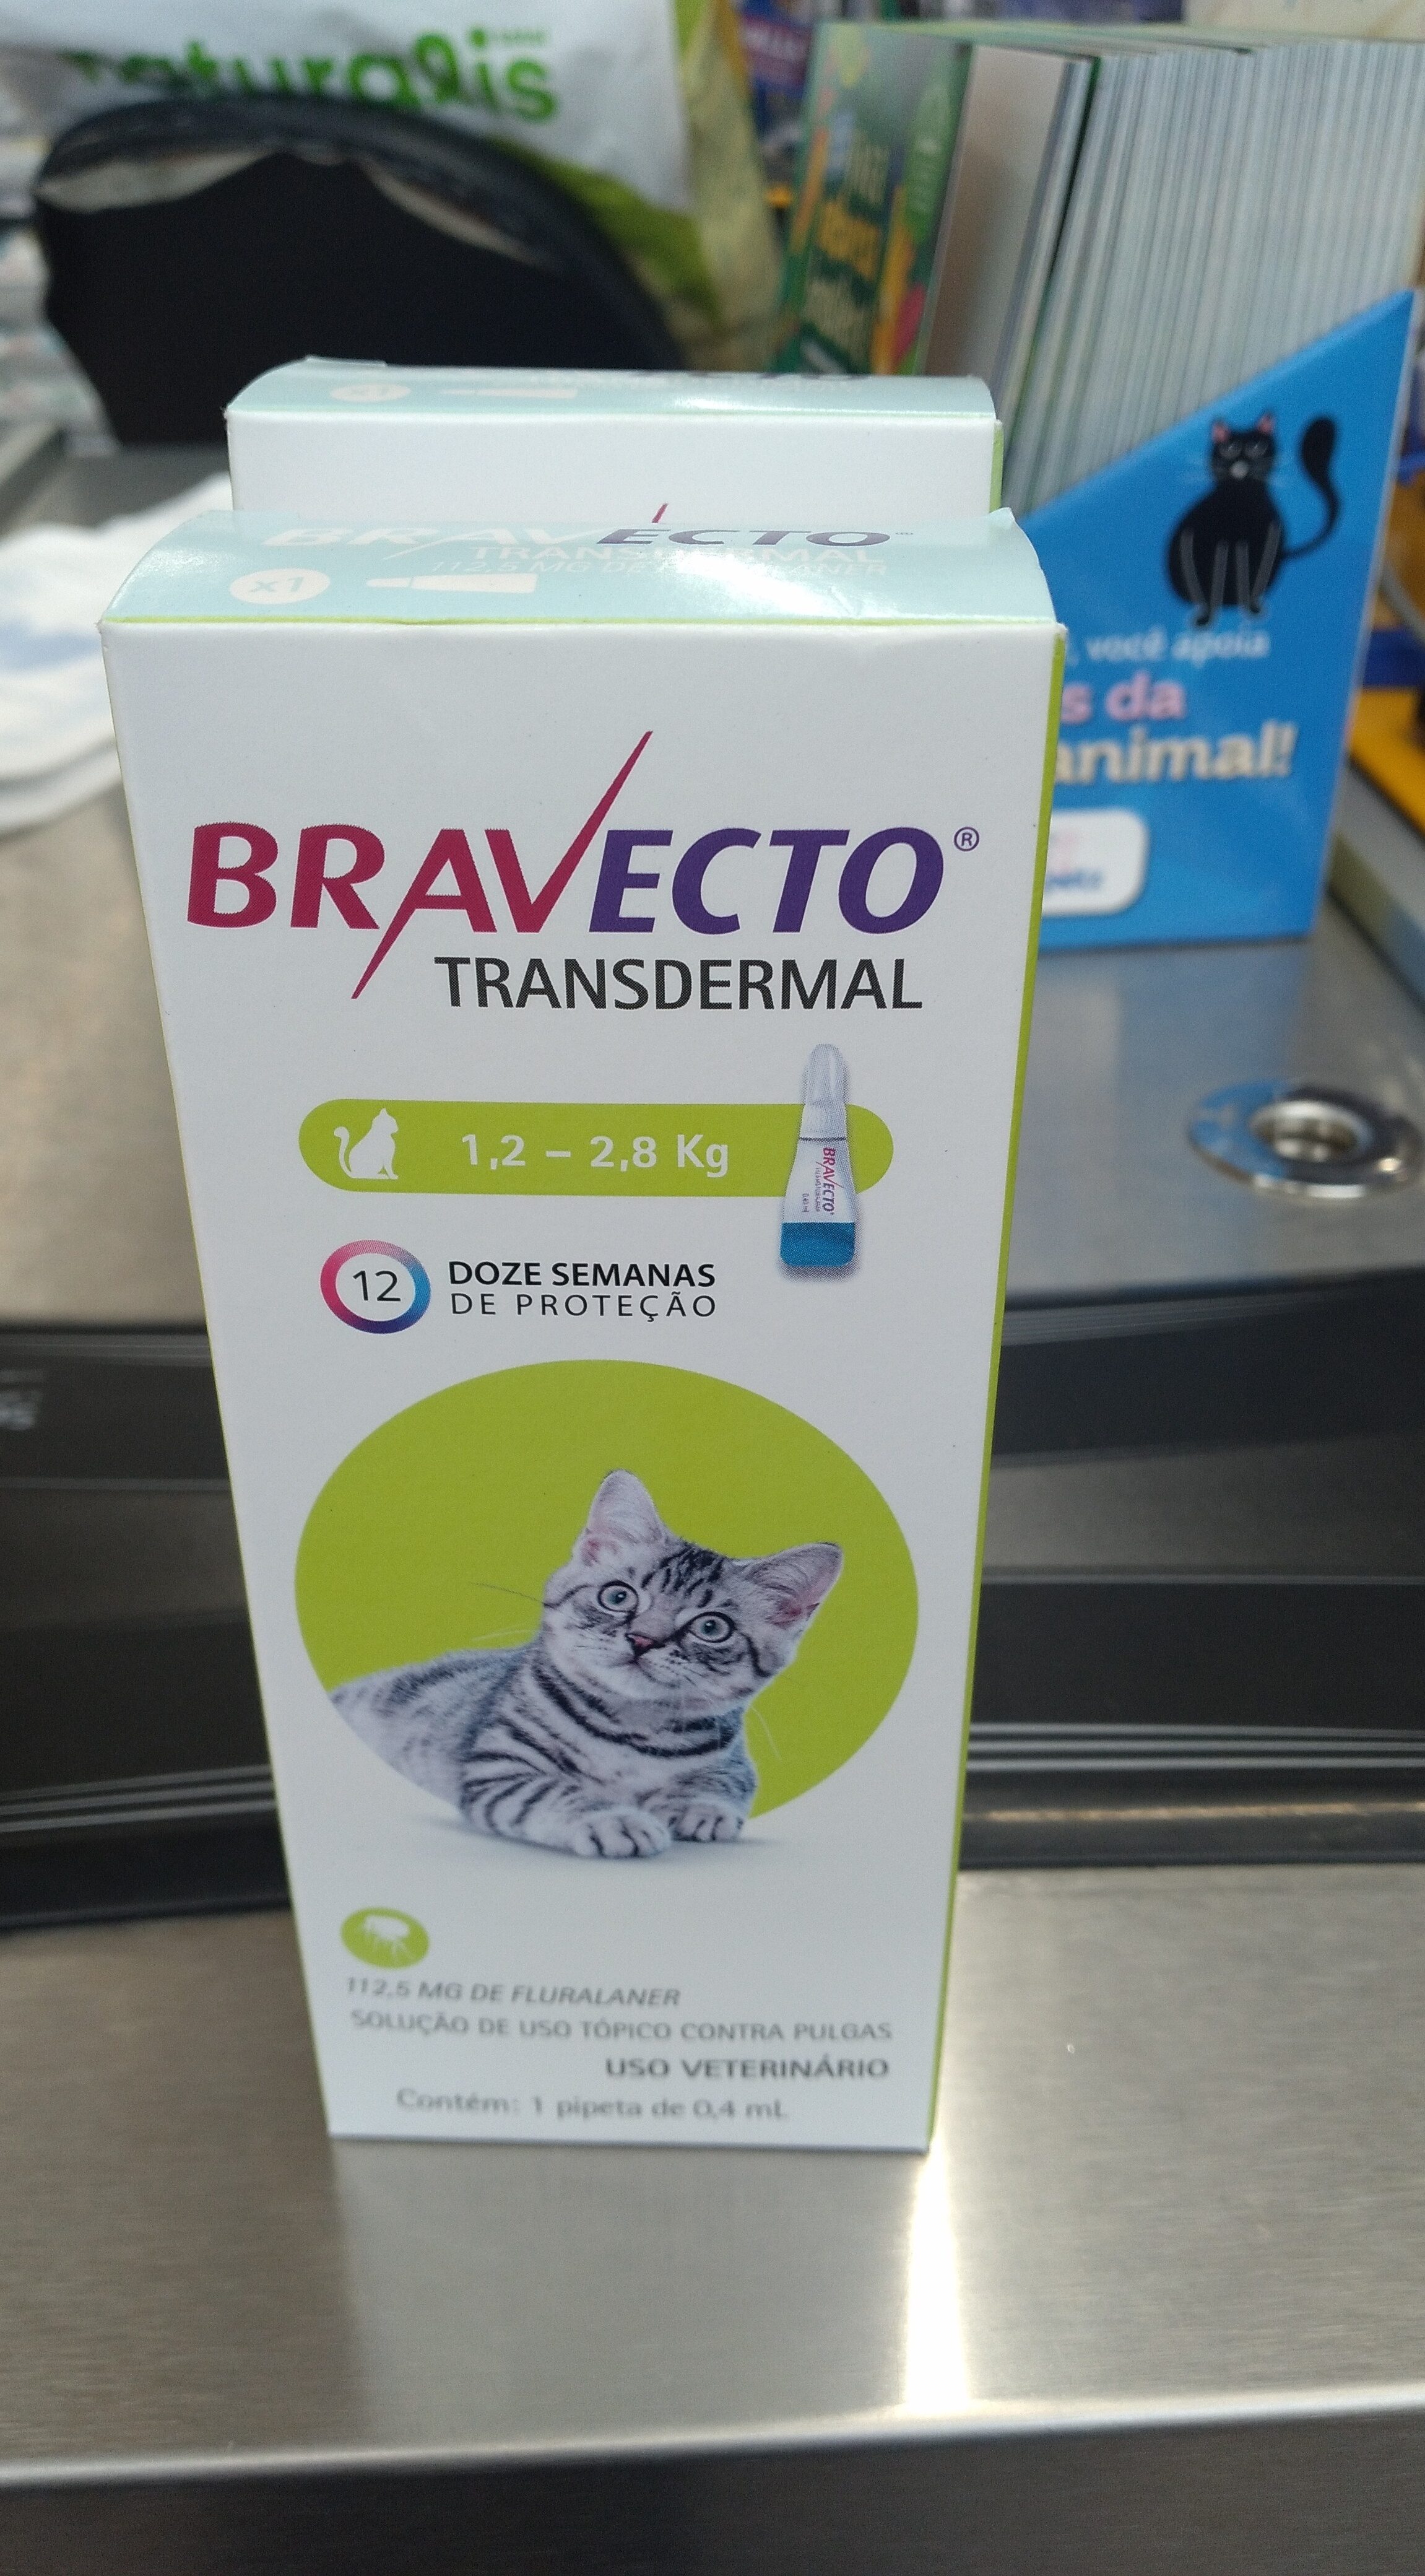 Bravecto transdermal 1,2 - 2,8kg - Produit - pt